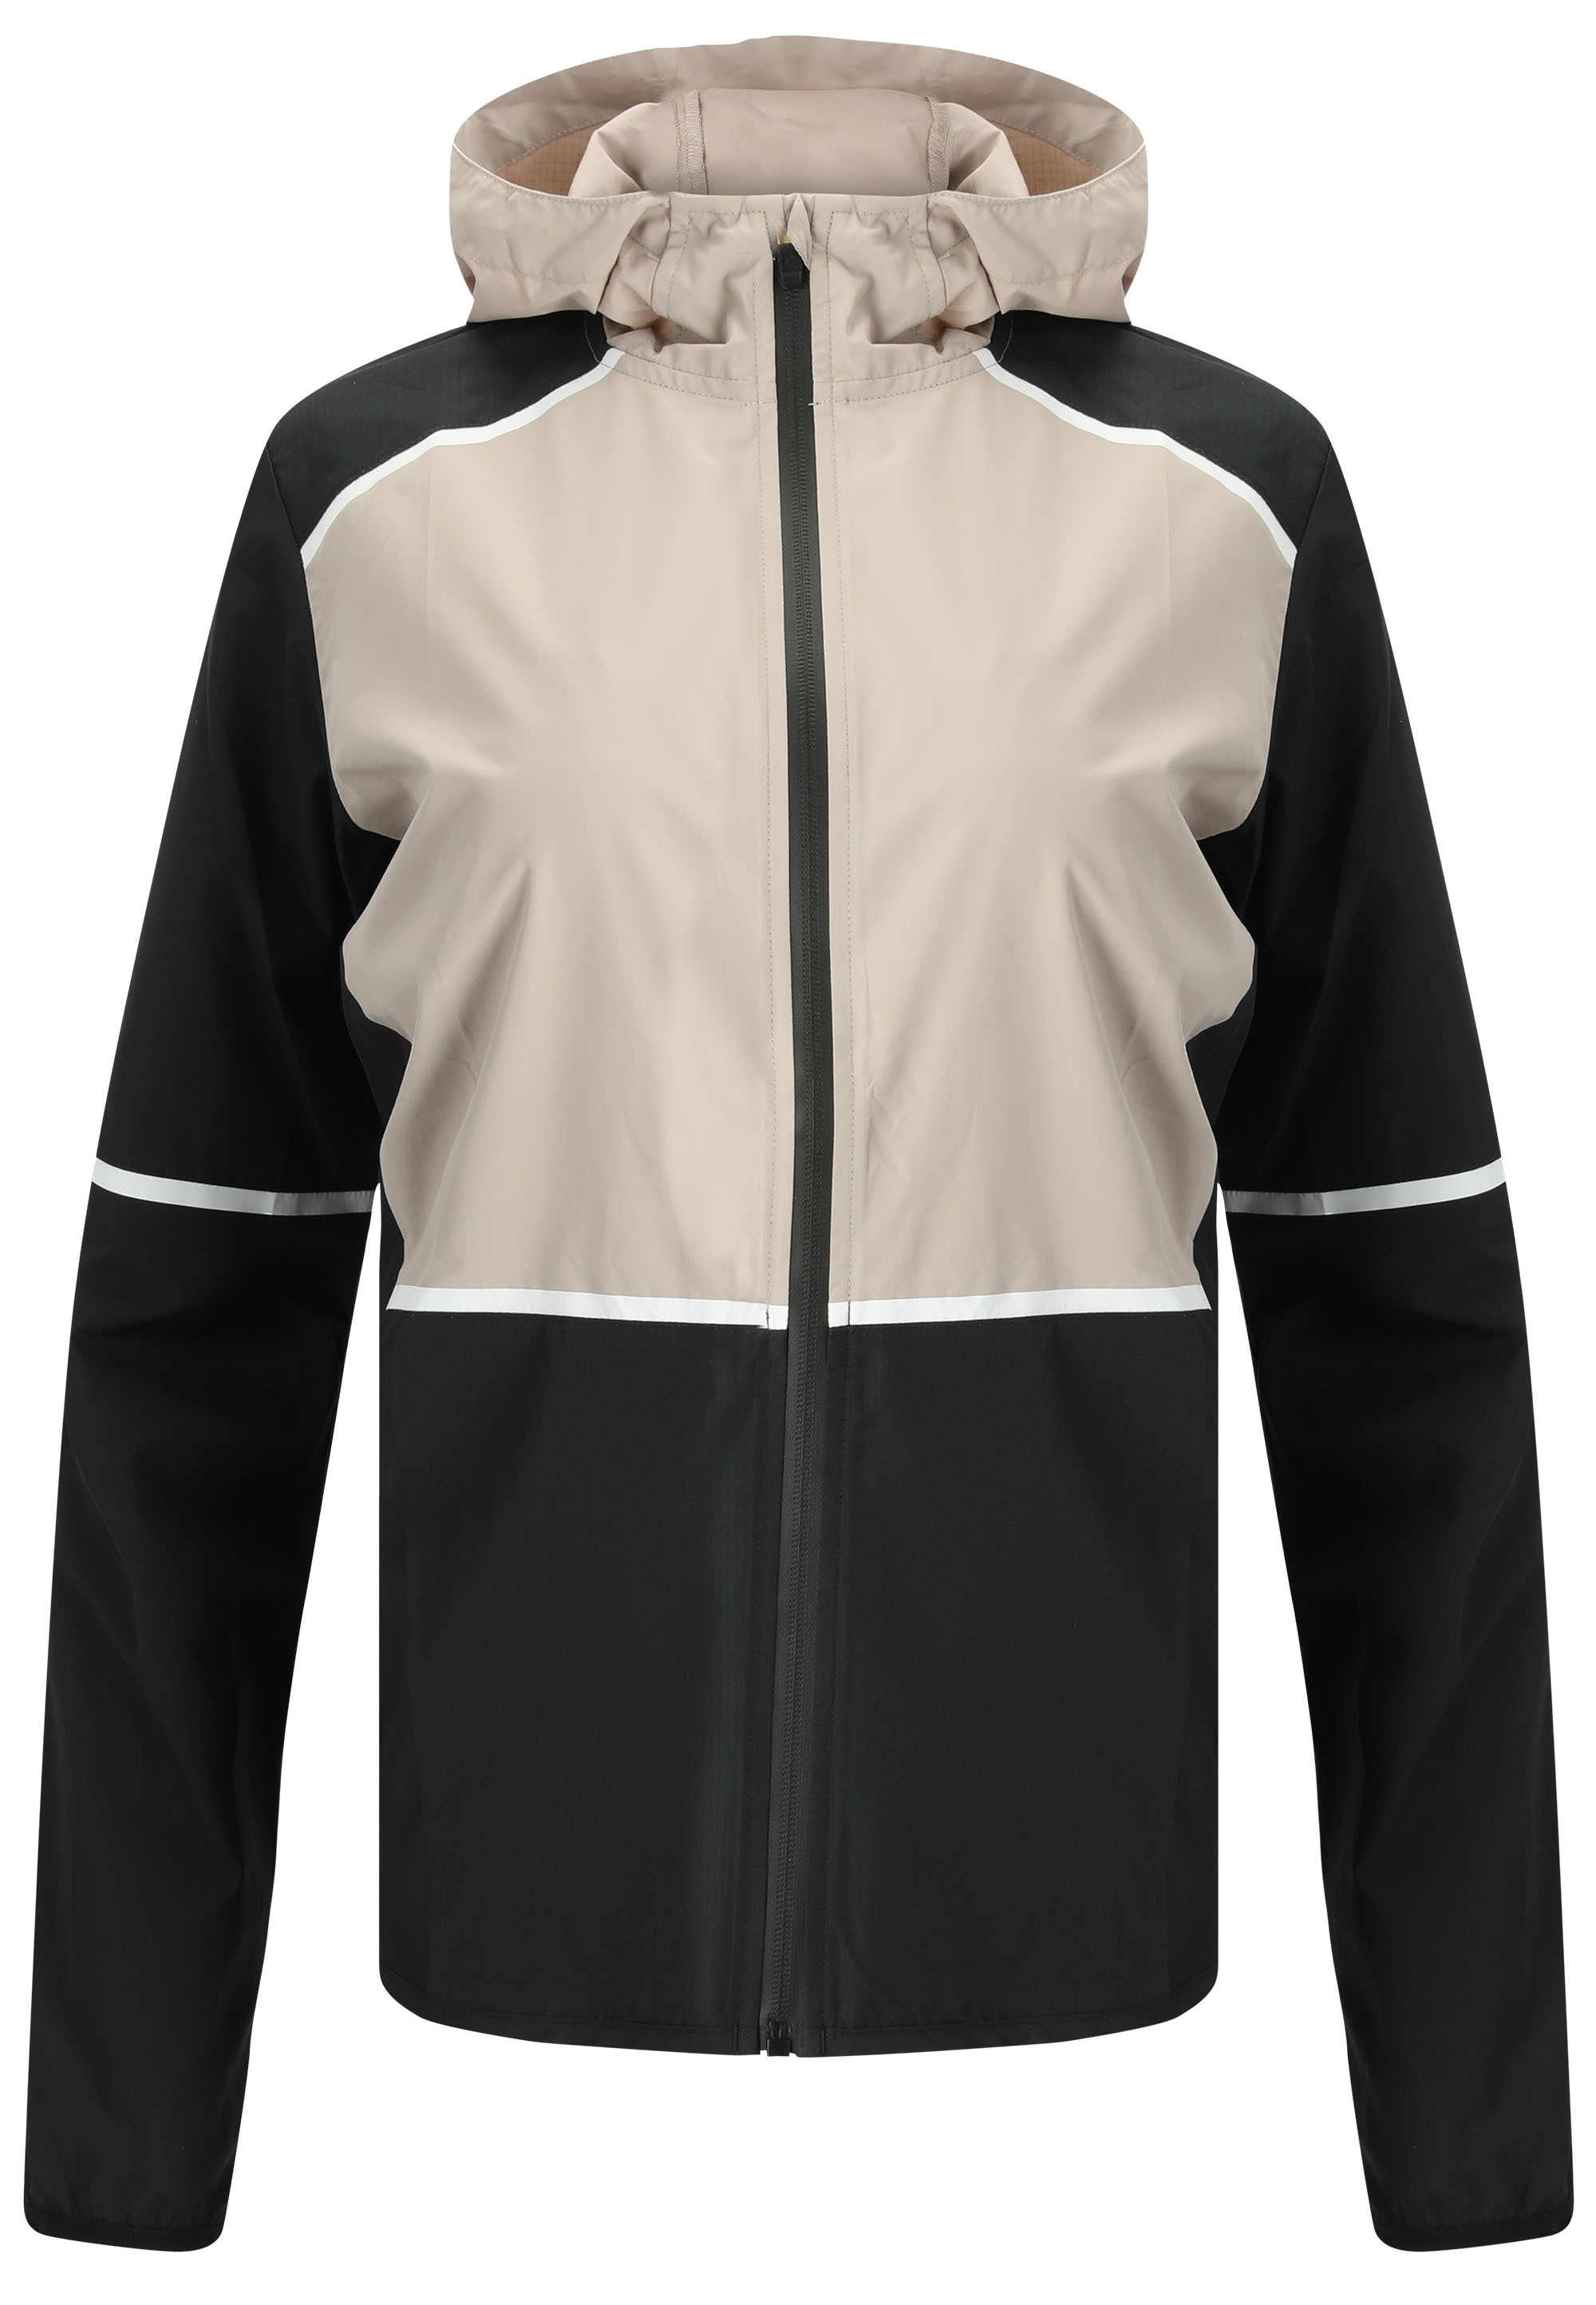 Спортивная куртка Endurance Flothar, цвет 1001 Black